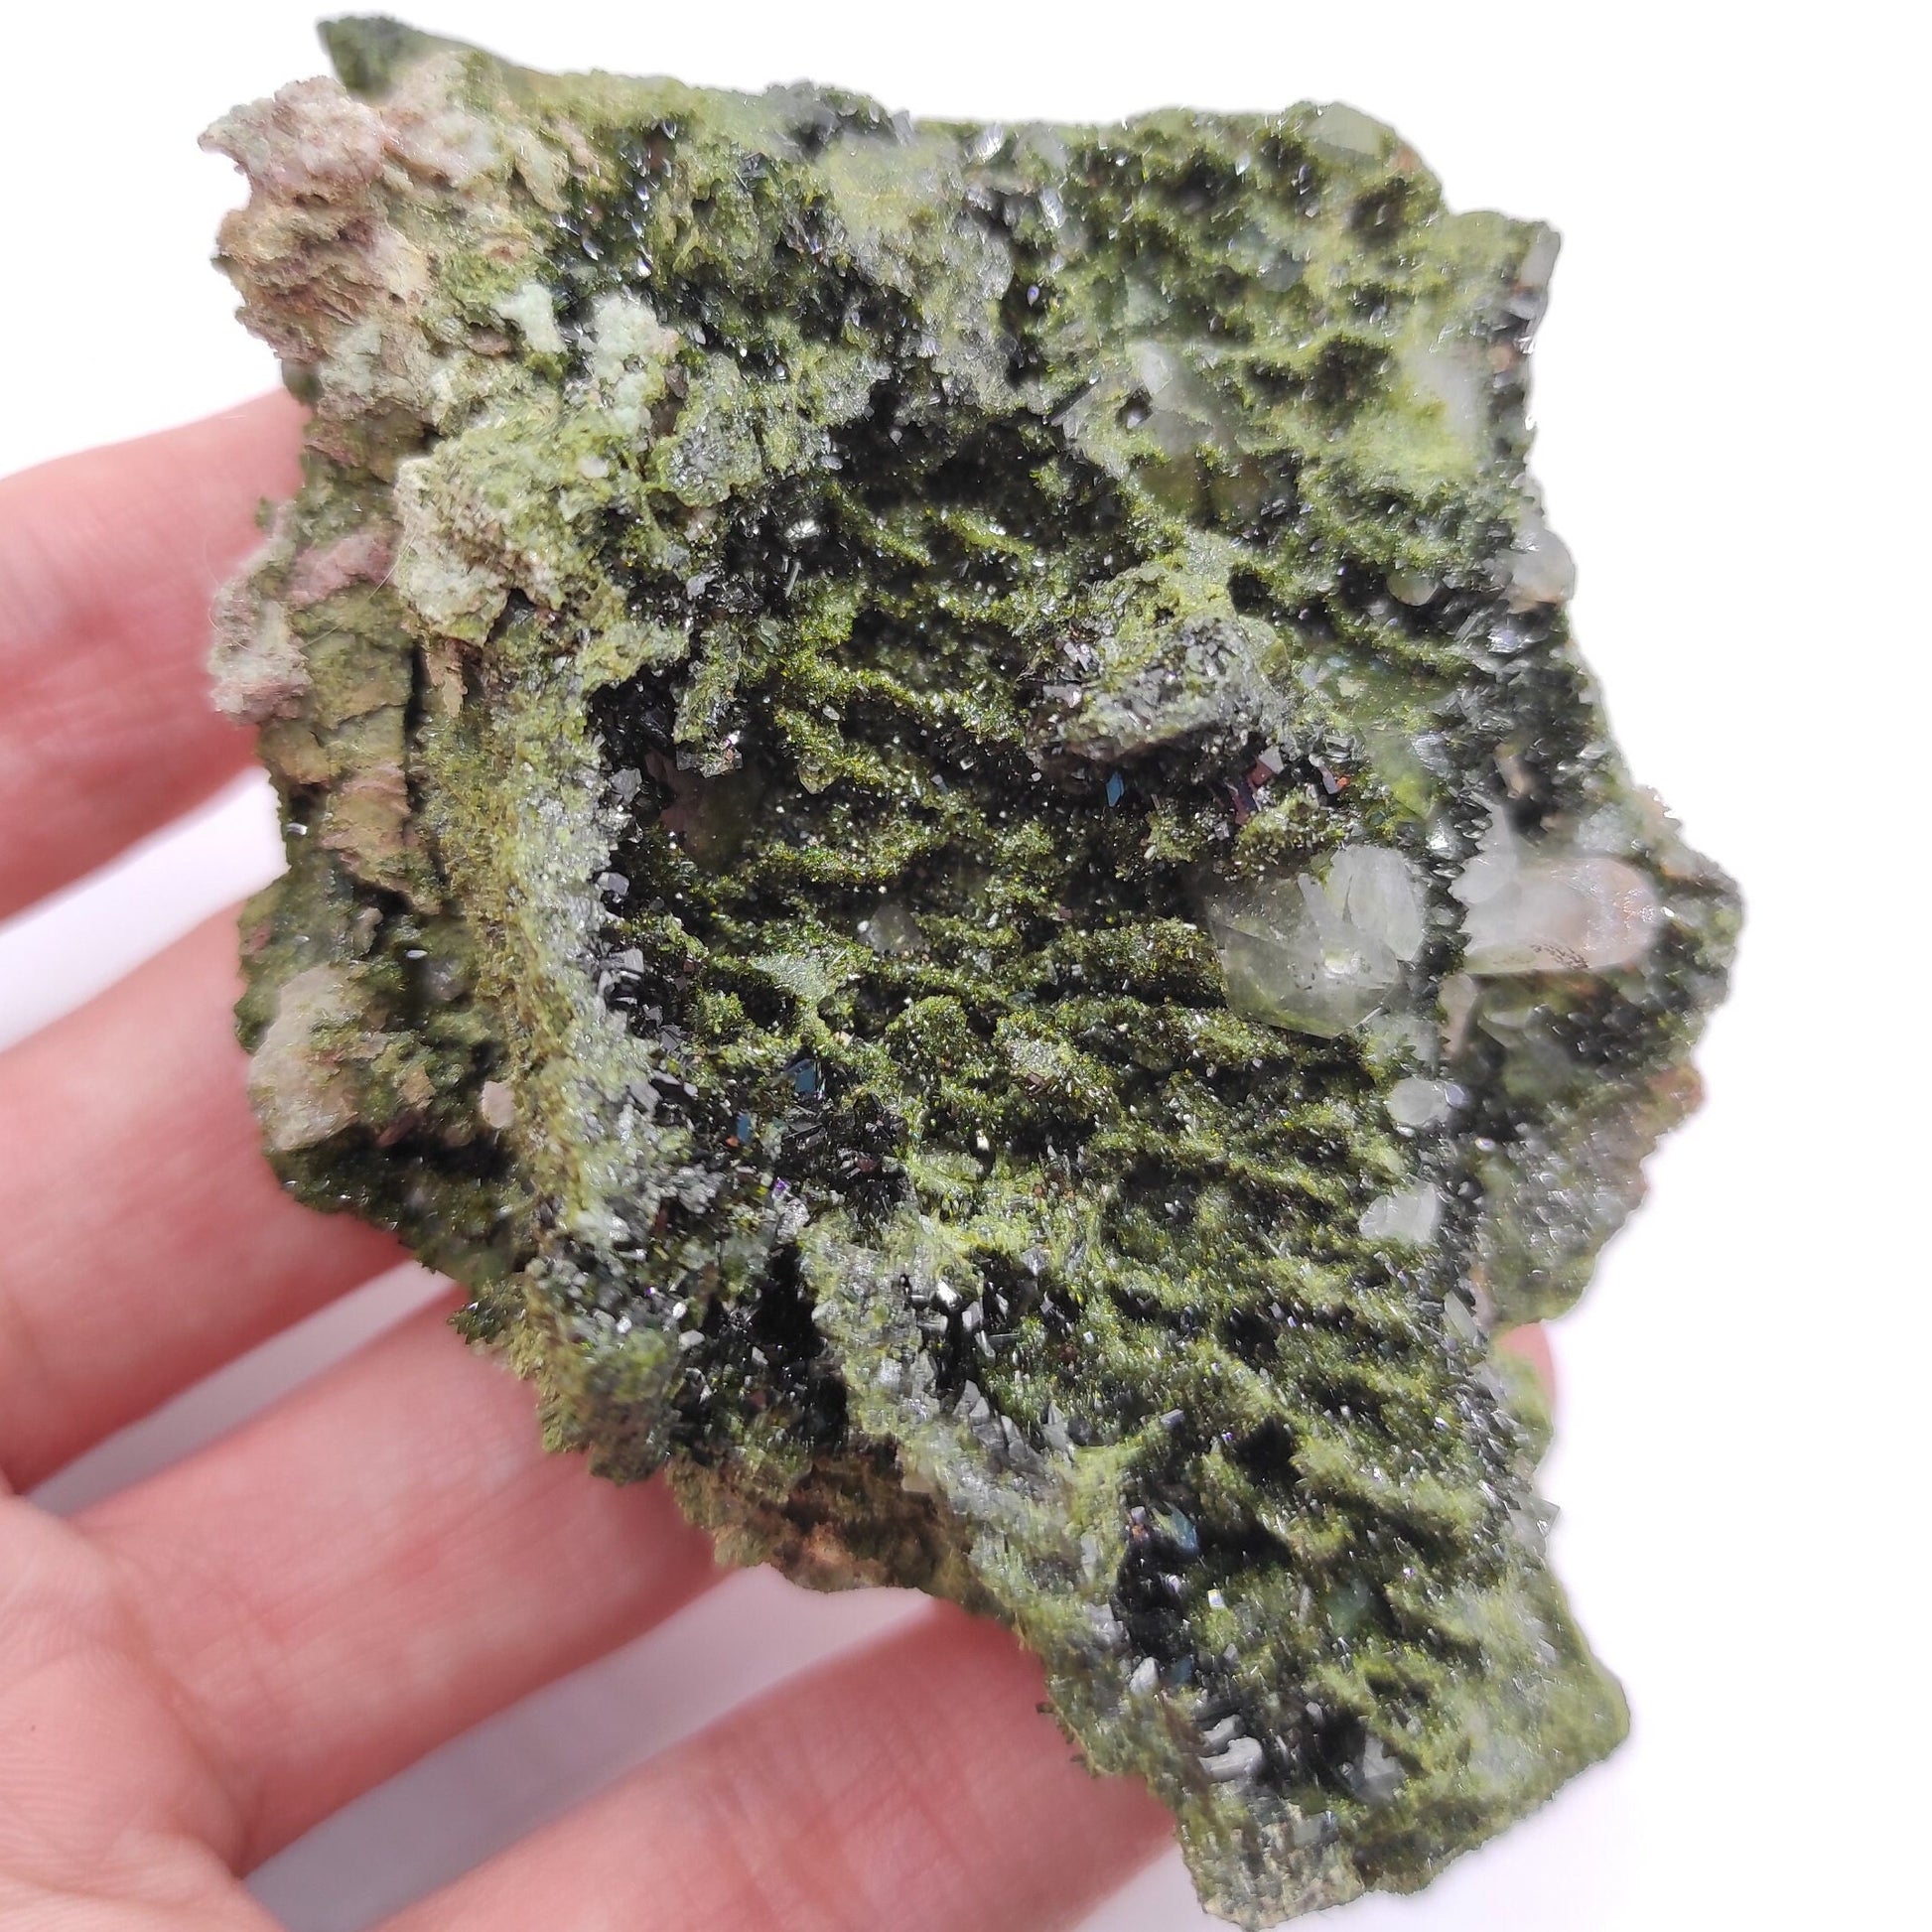 135g Sparkly Epidote & Forest Quartz - Hakkari, Turkey - Epidote with Clear Quartz - Forest Fairy Quartz - Natural Minerals - Rare Find